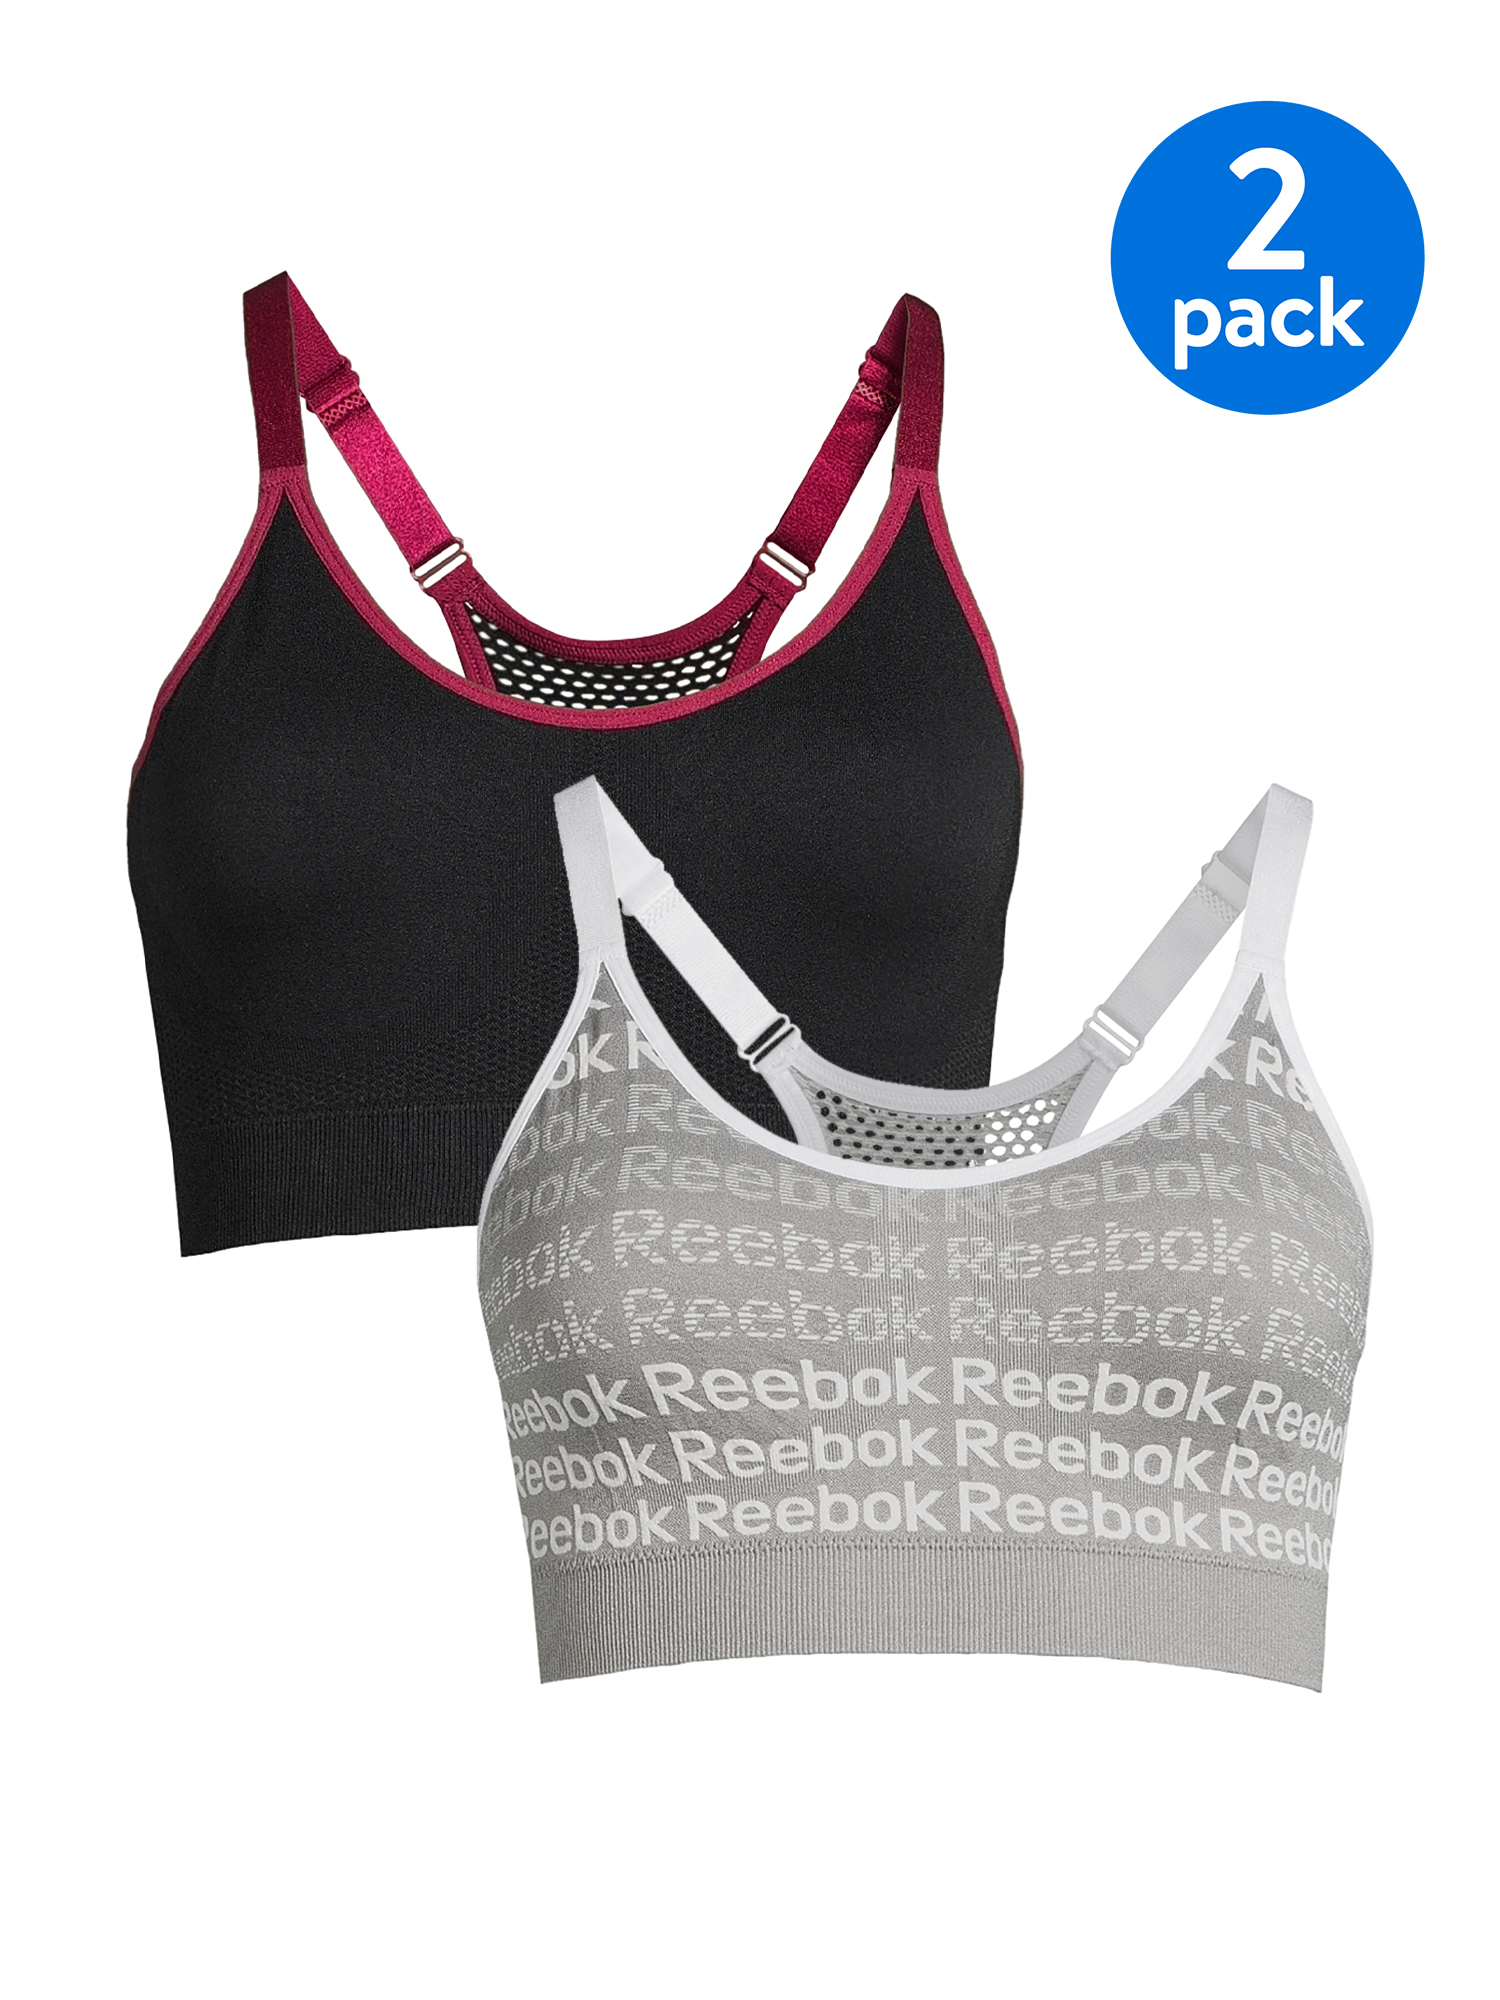 Reebok Women's Sports Bra, 2 Pack - image 1 of 7